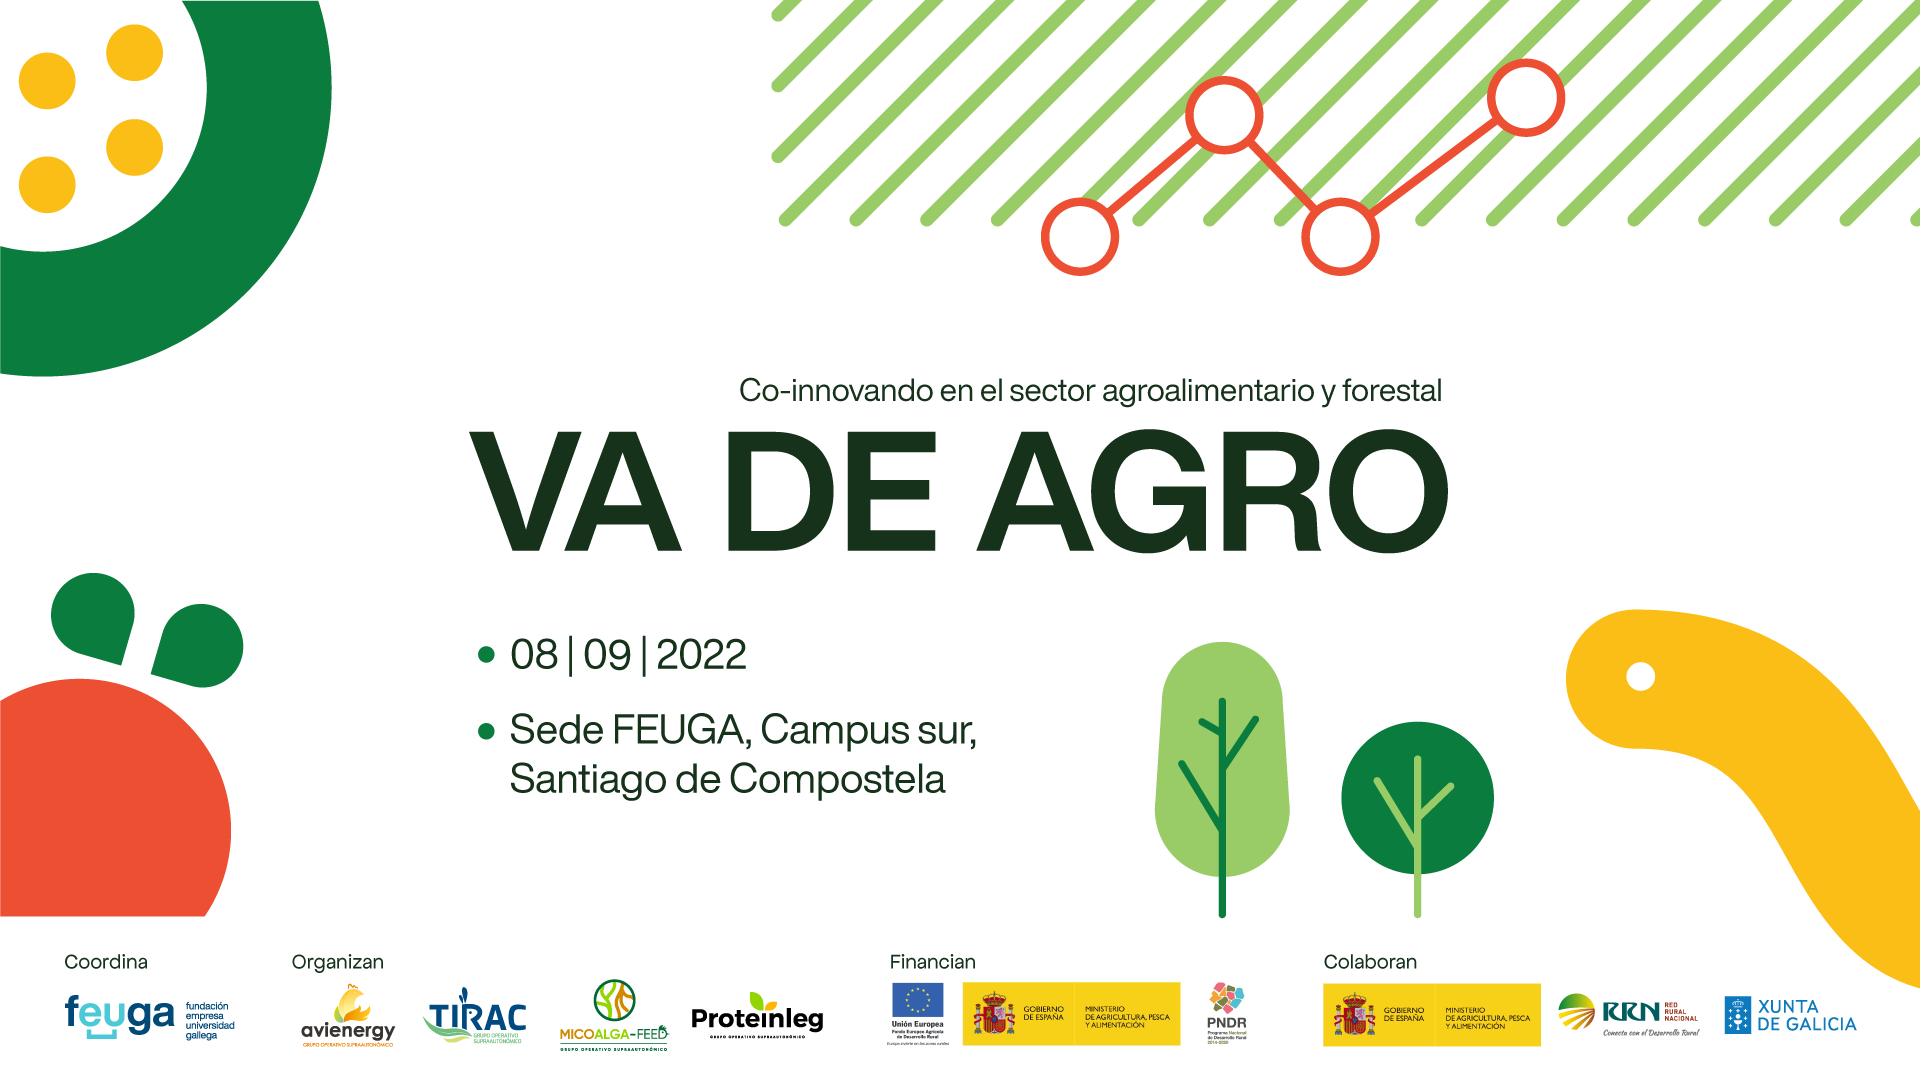 TIRAC organiza Va de Agro, el gran evento de la co-innovaci贸n en el sector agroalimentario y forestal